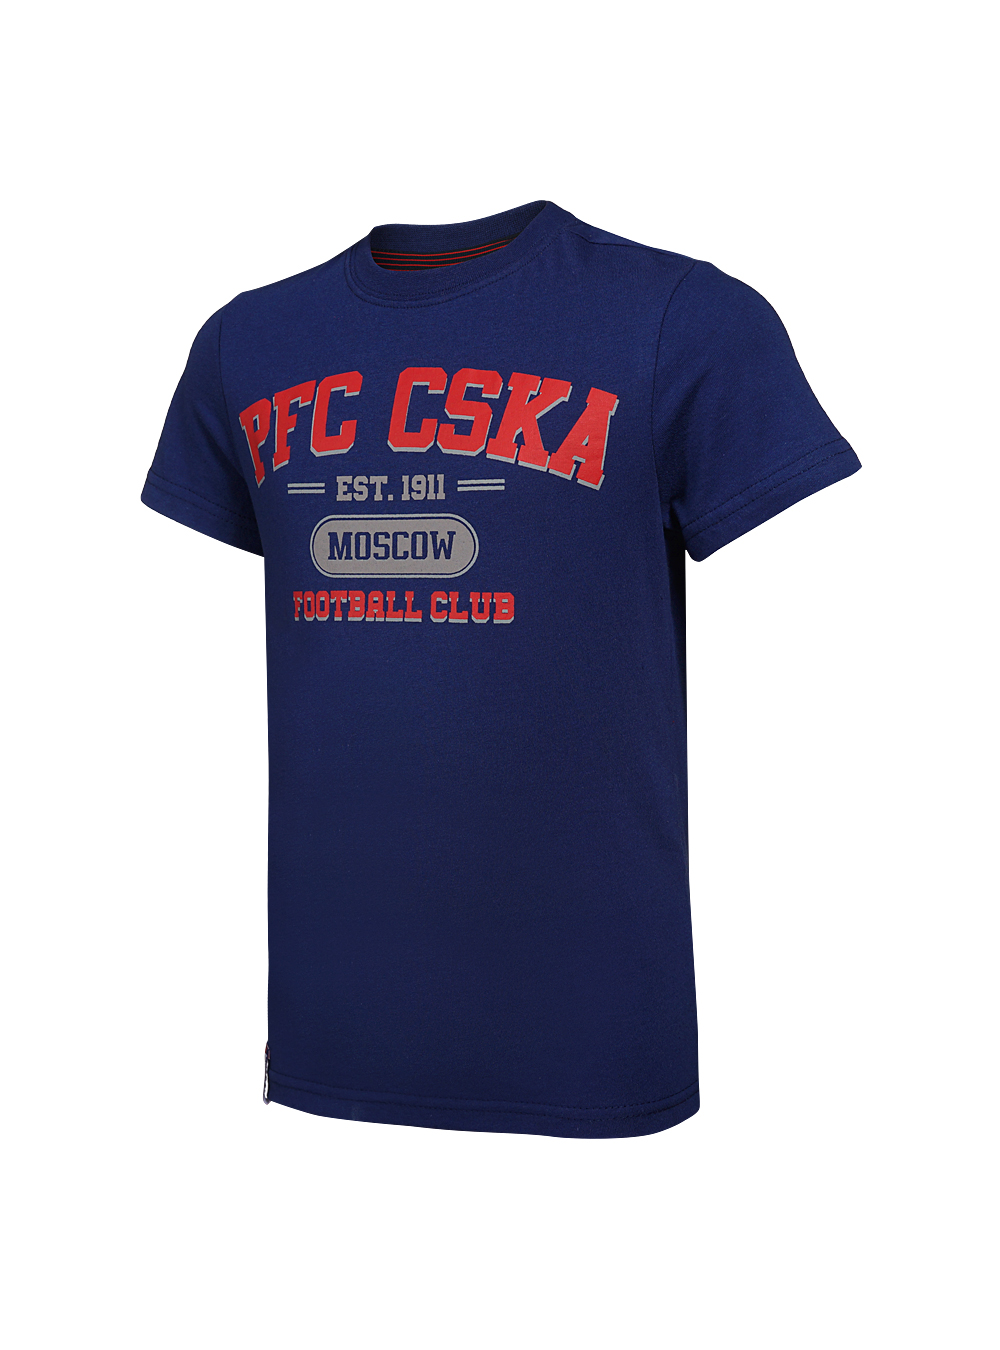 Футболка детская  PFC CSKA Moscow синяя (140) ПФК ЦСКА CSK18031 - фото 1